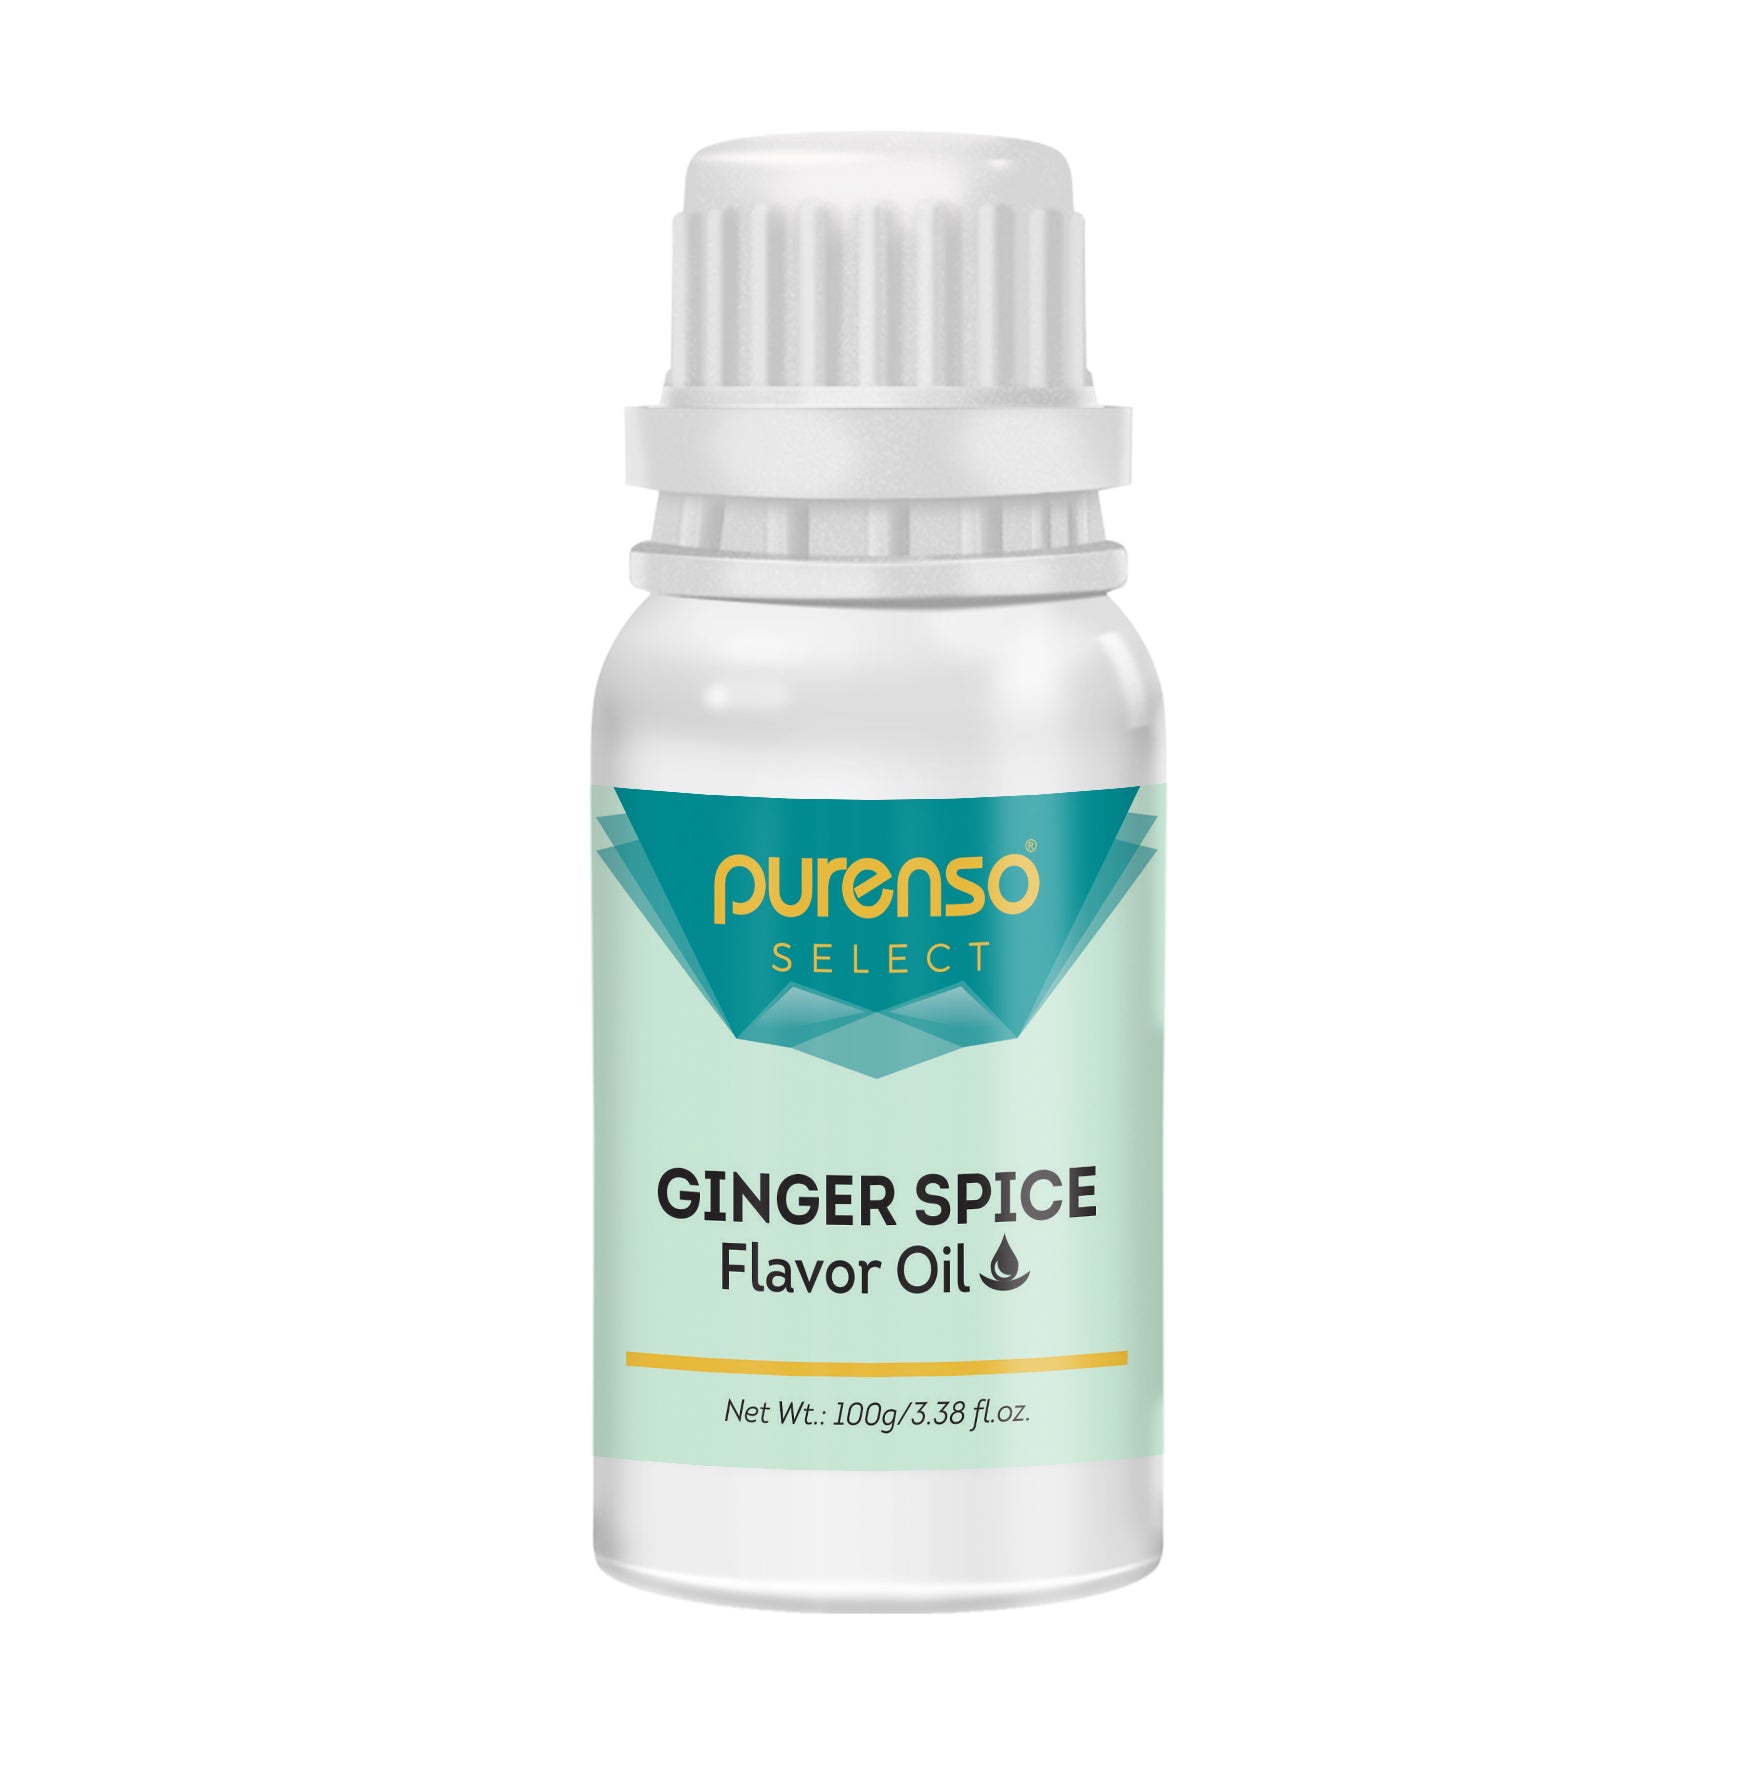 Ginger Spice Flavor Oil